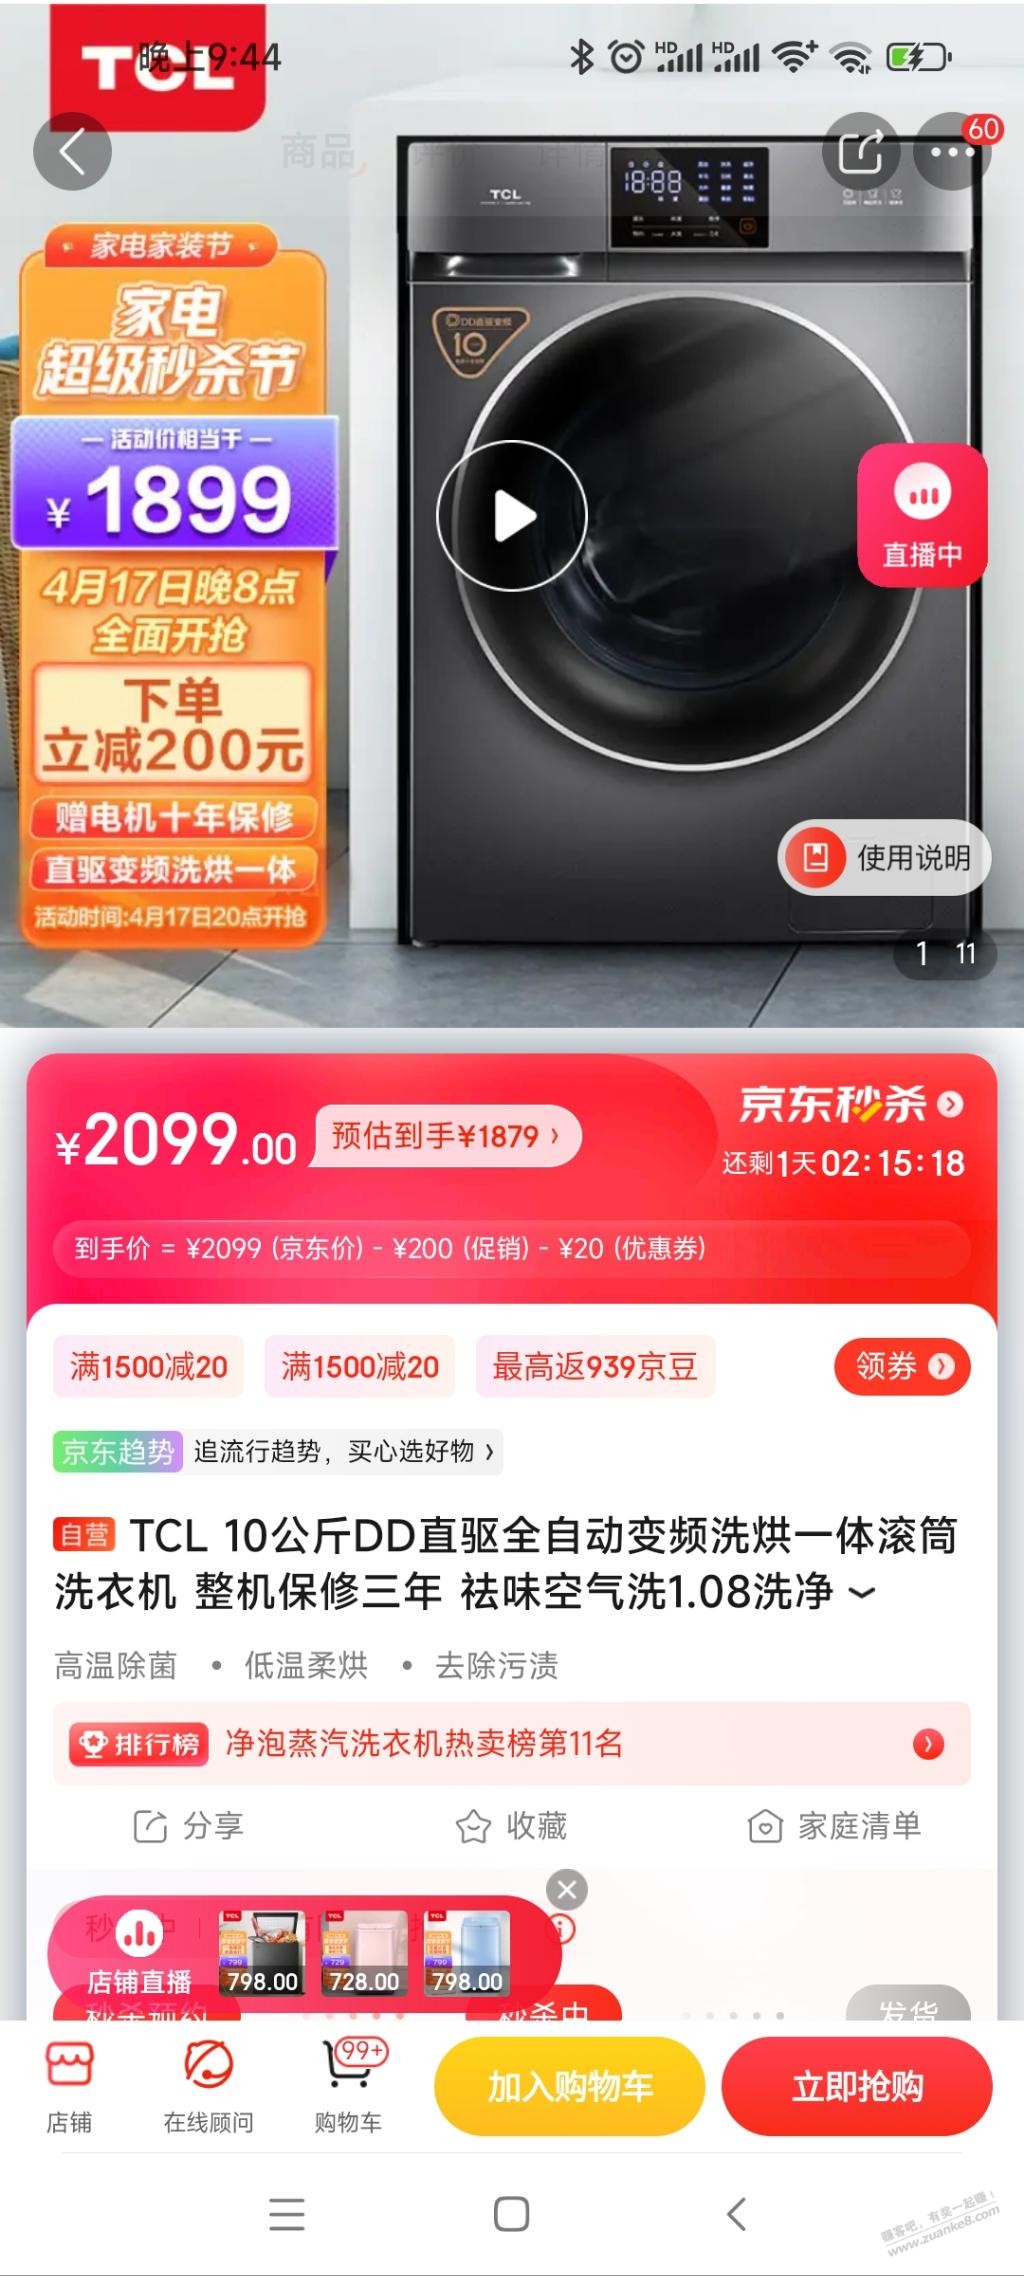 上午洗衣机取消了-选了另外一款TCL10kgDD直驱带烘干 1700左右。个人认为这个价格不错